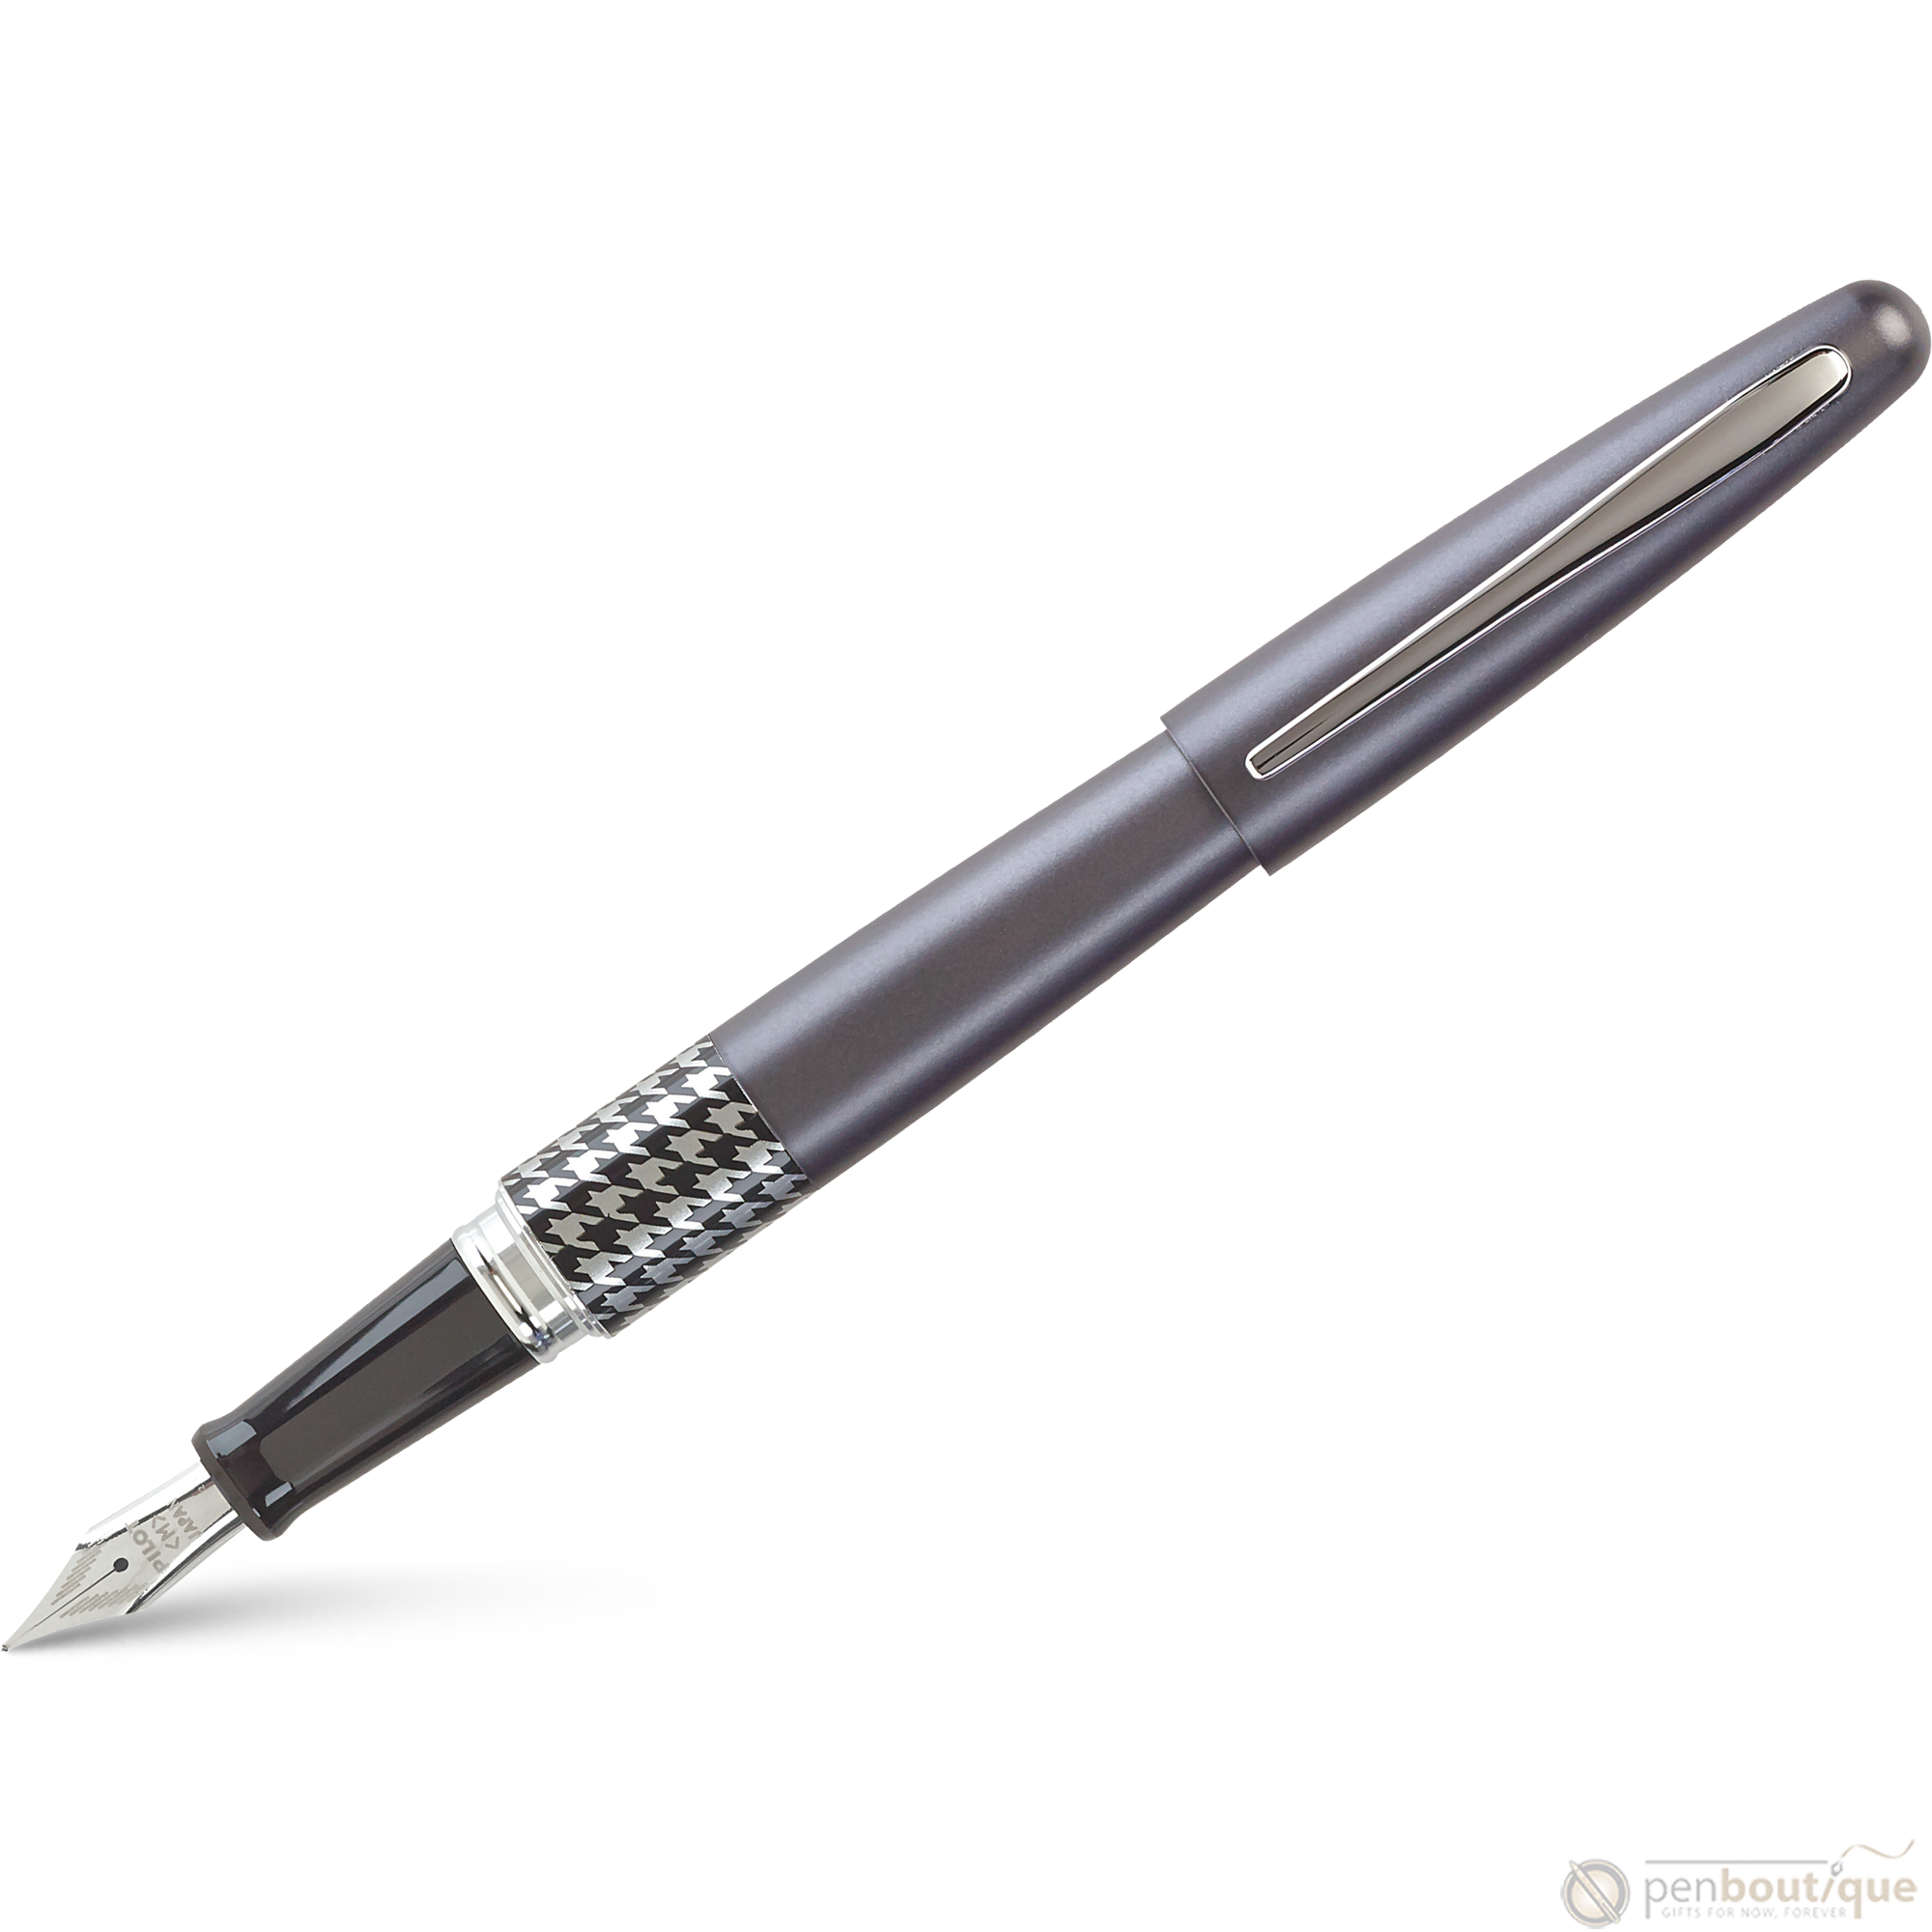 Pilot Fountain Pen - MR Collection - Retro Pop - Gray-Pen Boutique Ltd